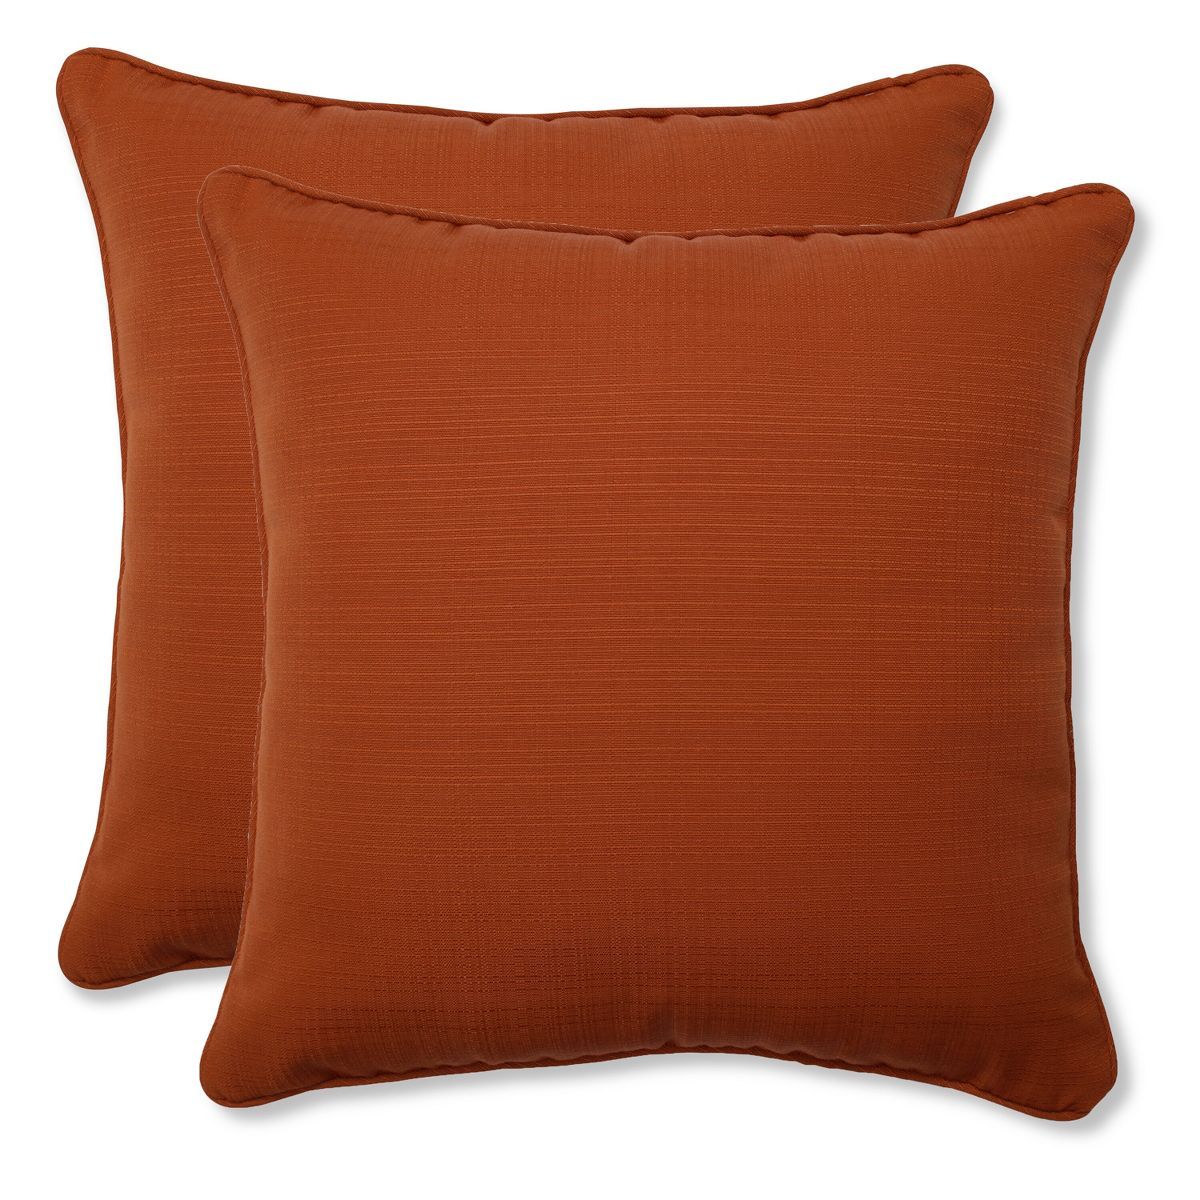 18.5"x18.5" Fresco 2pc Square Outdoor Throw Pillows - Pillow Perfect | Target